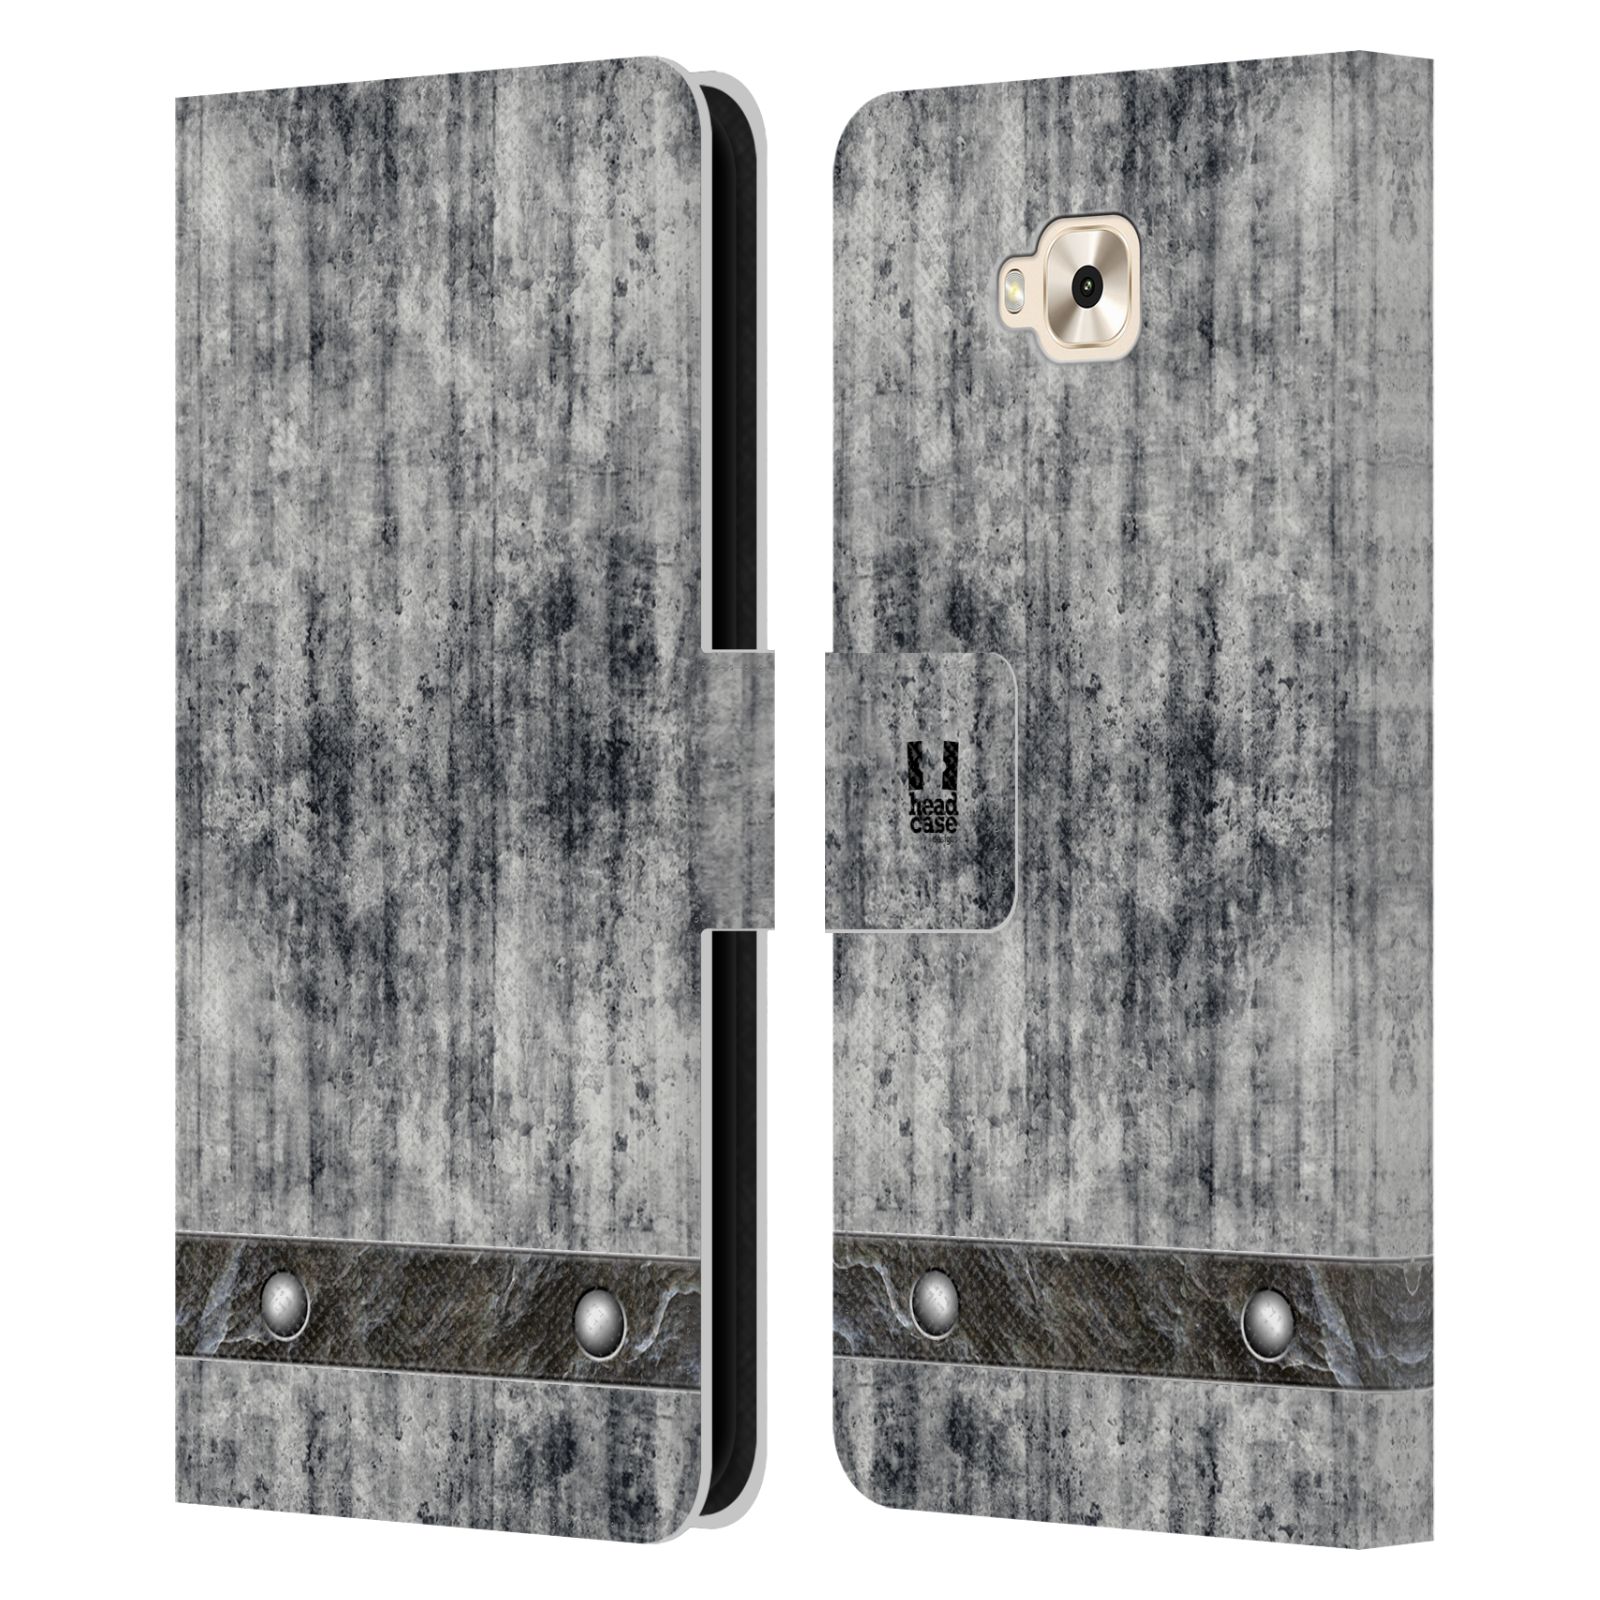 Pouzdro pro mobil Asus Zenfone 4 Selfie ZD553KL  - Stavební textura šedý beton